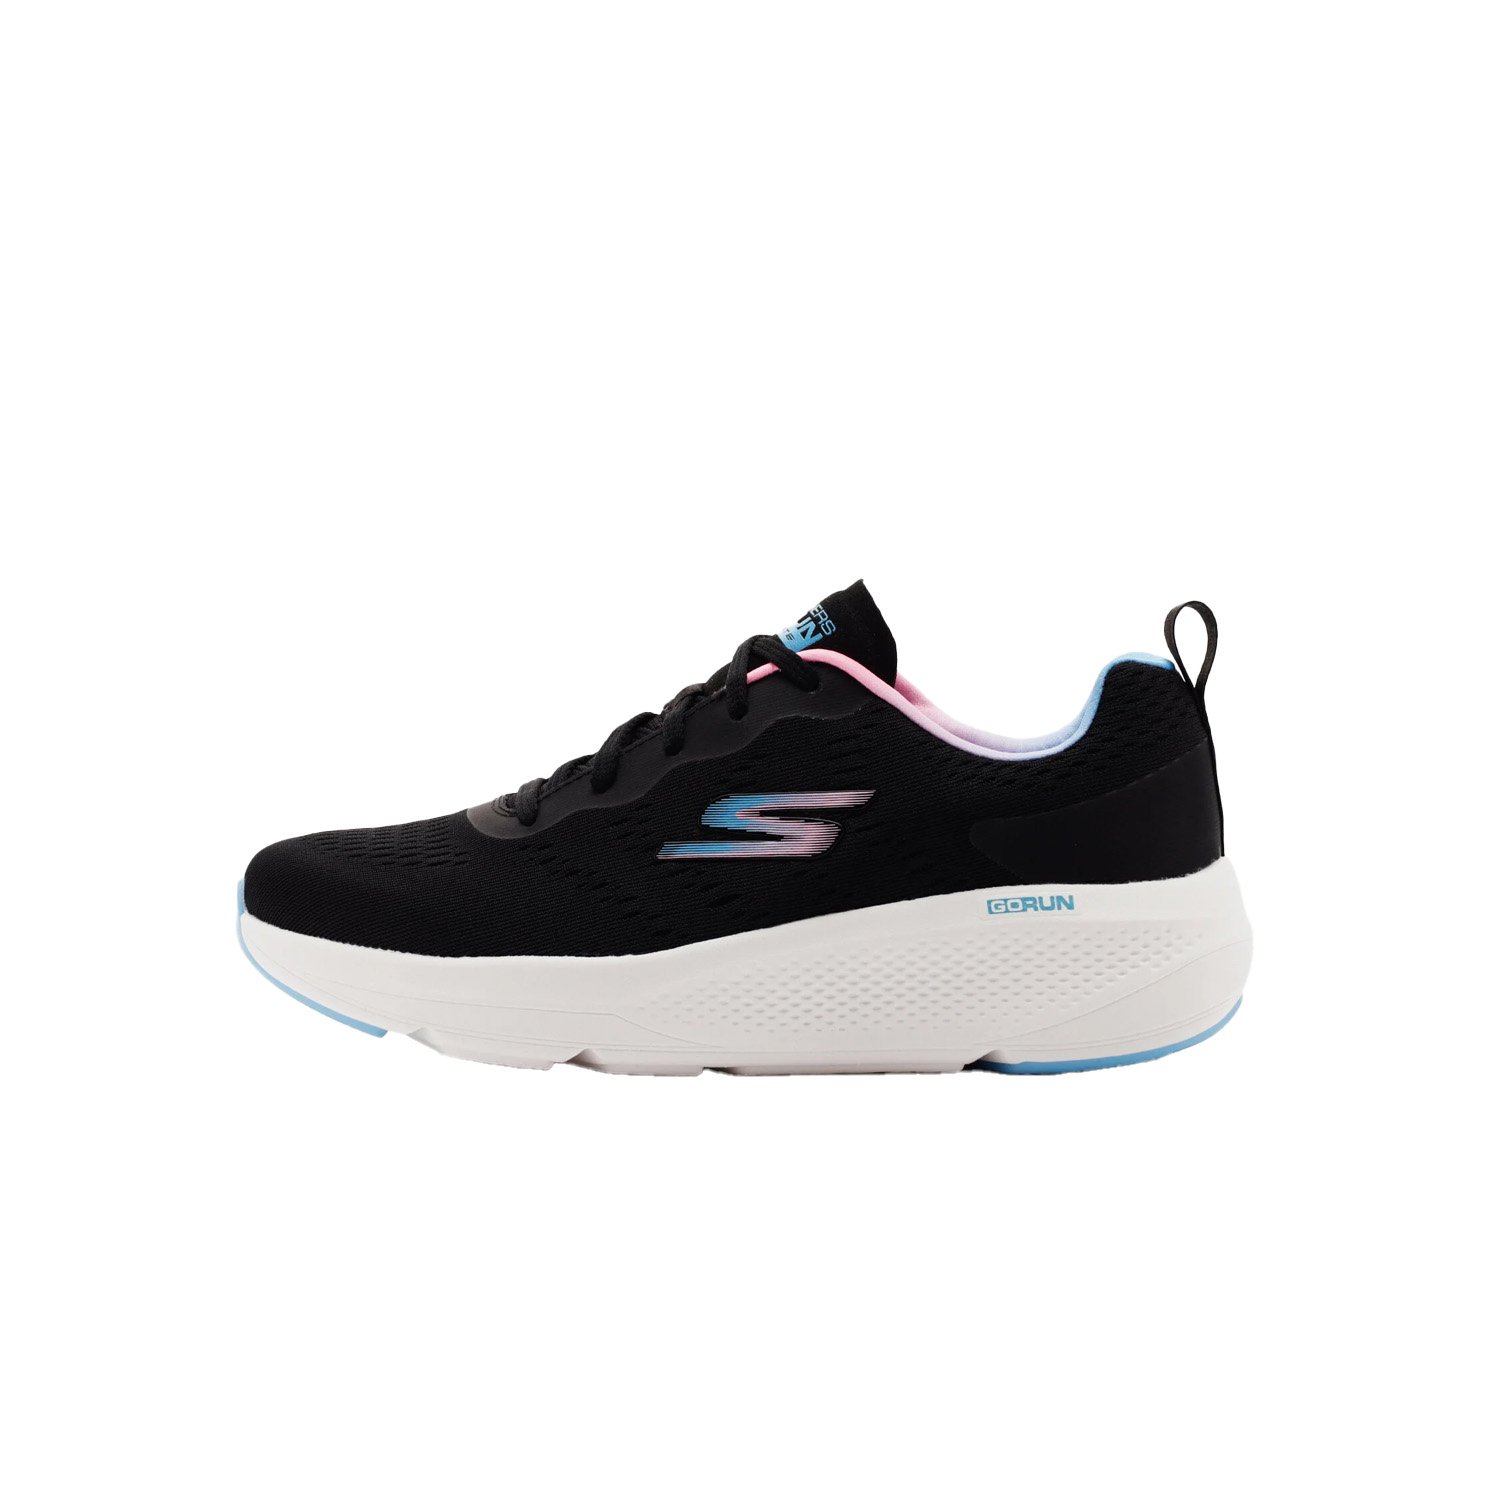 Skechers Go Run Elevate Kadın Koşu Ayakkabısı - Renkli - 1